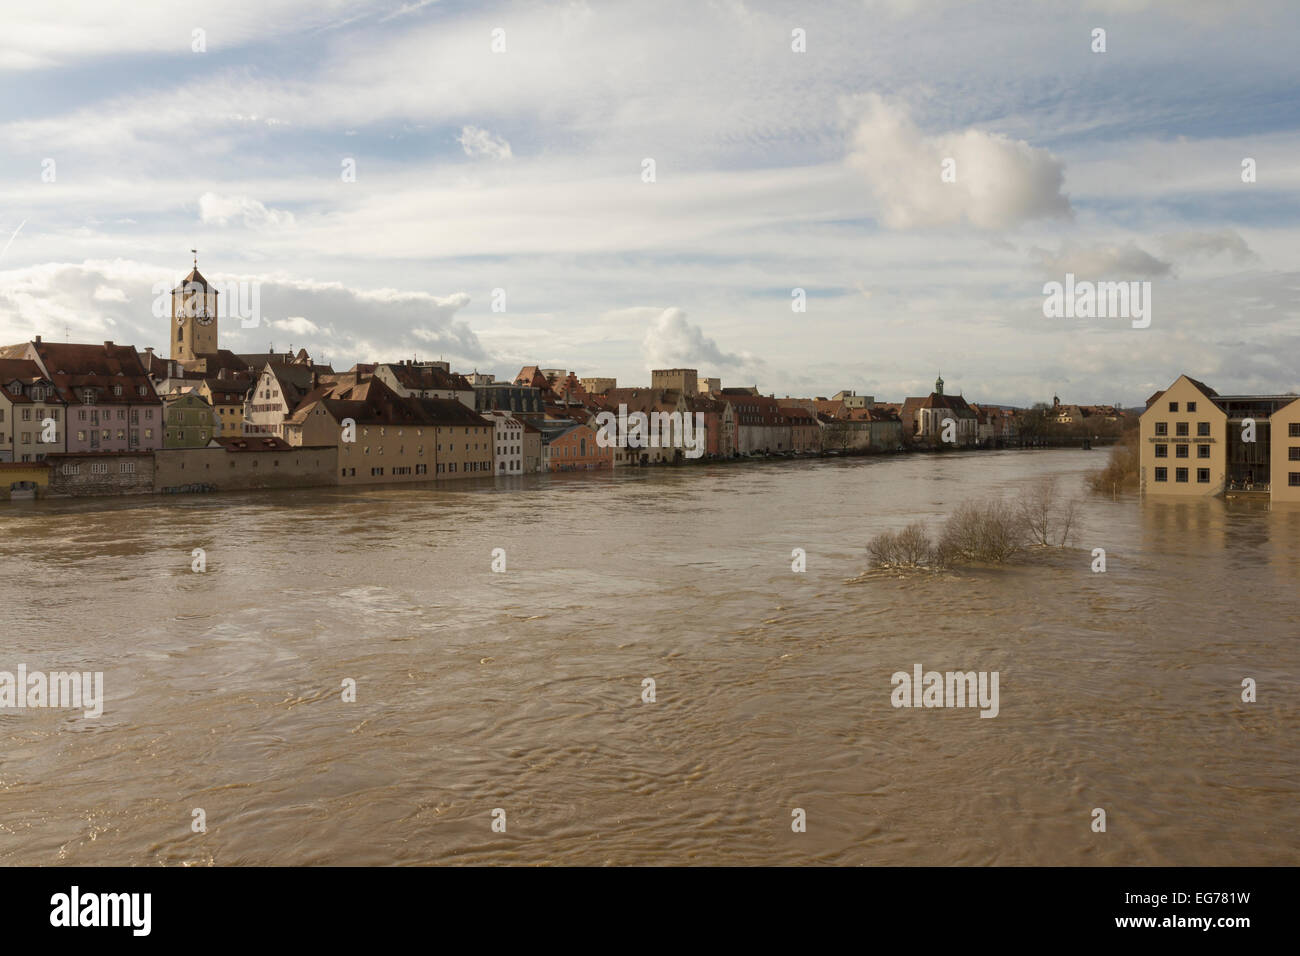 Germany Bavaria Flood Of River Danube In Regensburg Stock Photo Alamy